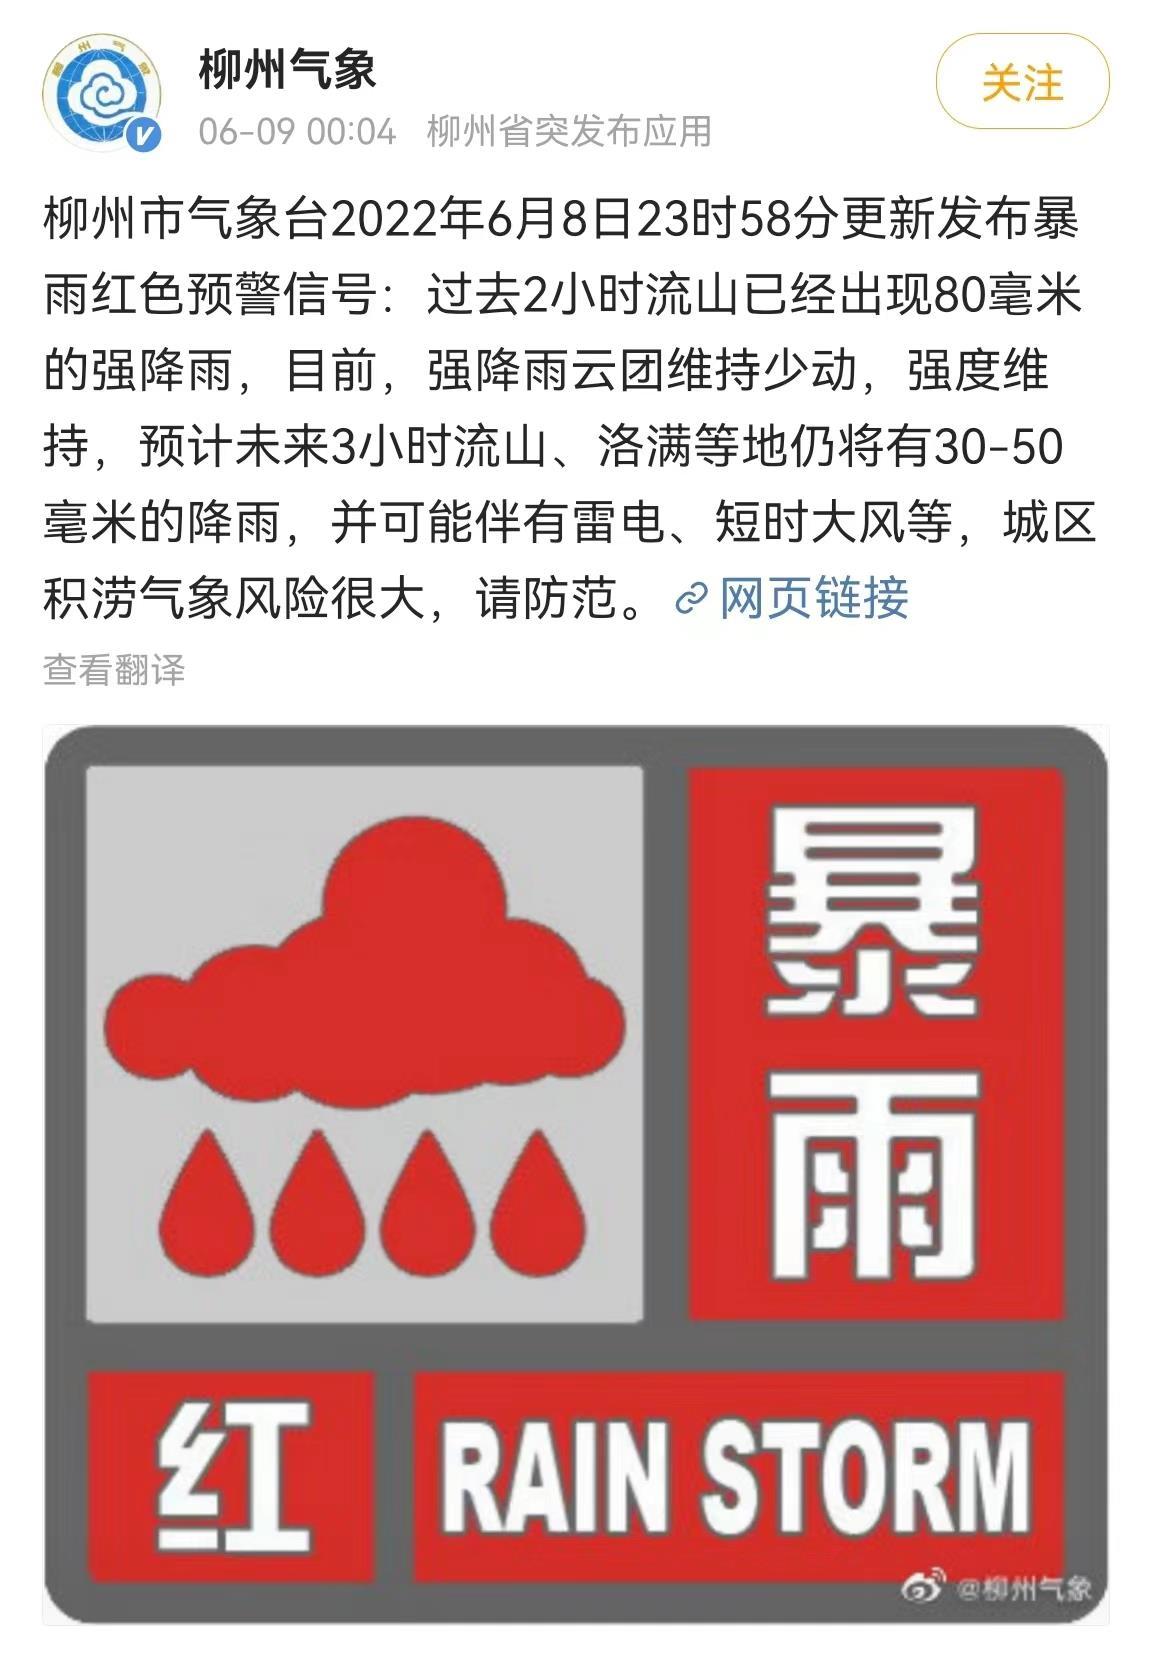 广西柳州更新发布暴雨红色预警信号 城区积涝气象风险很大